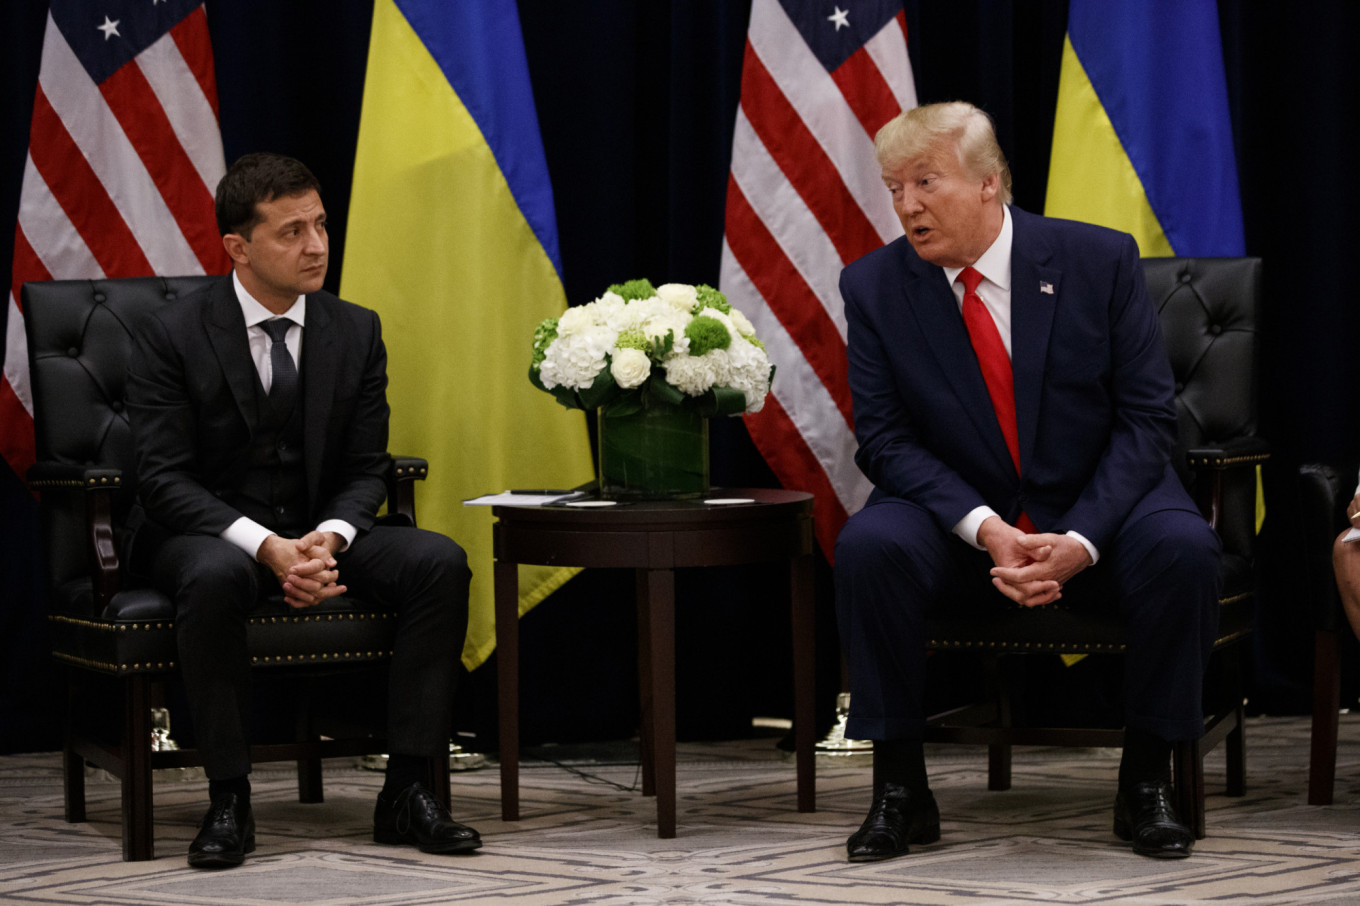 Seeking Favors, Trump Asked Ukraine President to Investigate Biden